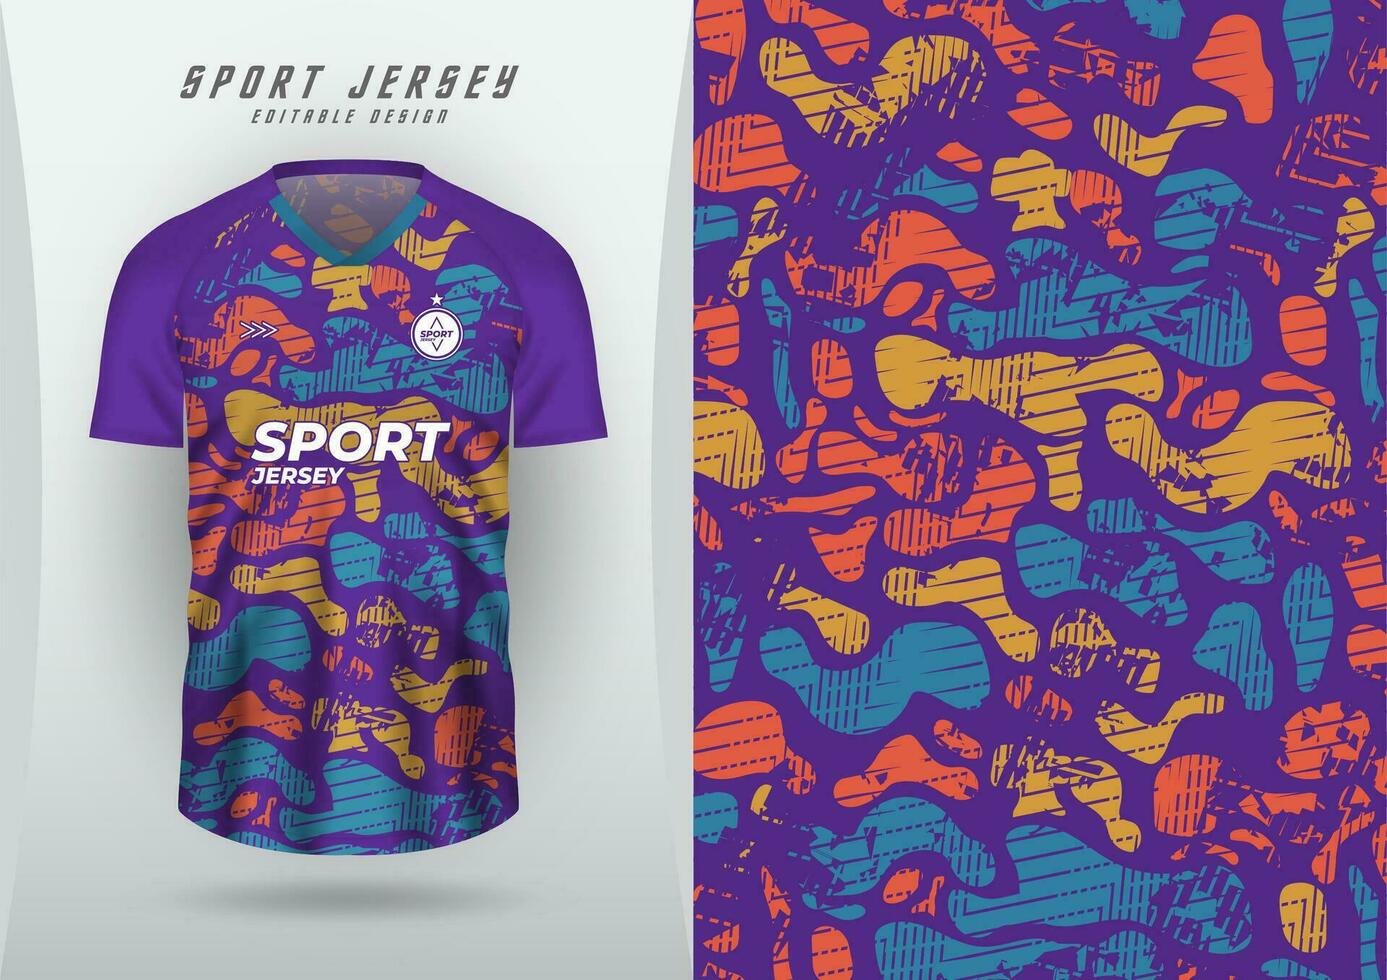 achtergrond voor sport- Jersey Amerikaans voetbal Jersey rennen Jersey racing wielersport Purper oppervlak, vloeistof patroon met blauw, oranje, geel. vector